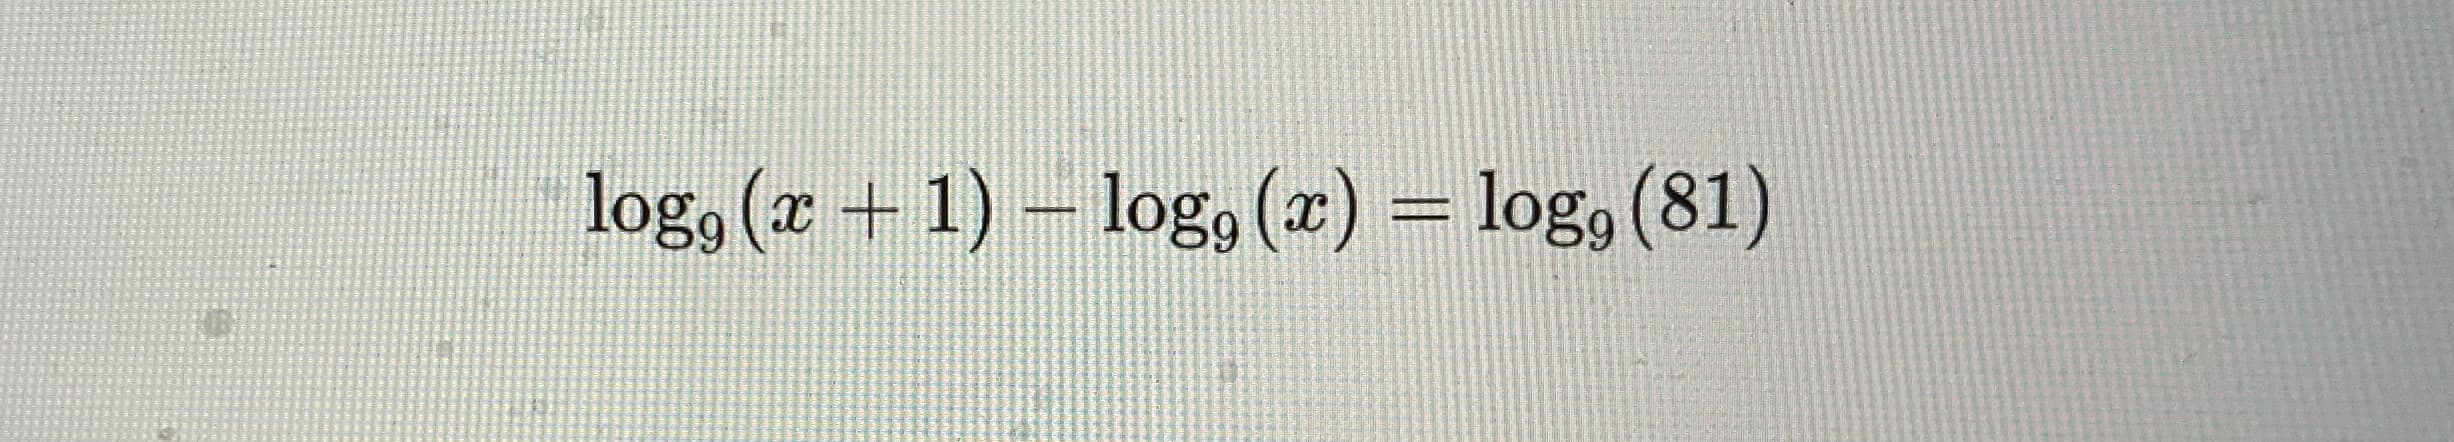 log, (z + 1) – log, (x) = log, (81)
